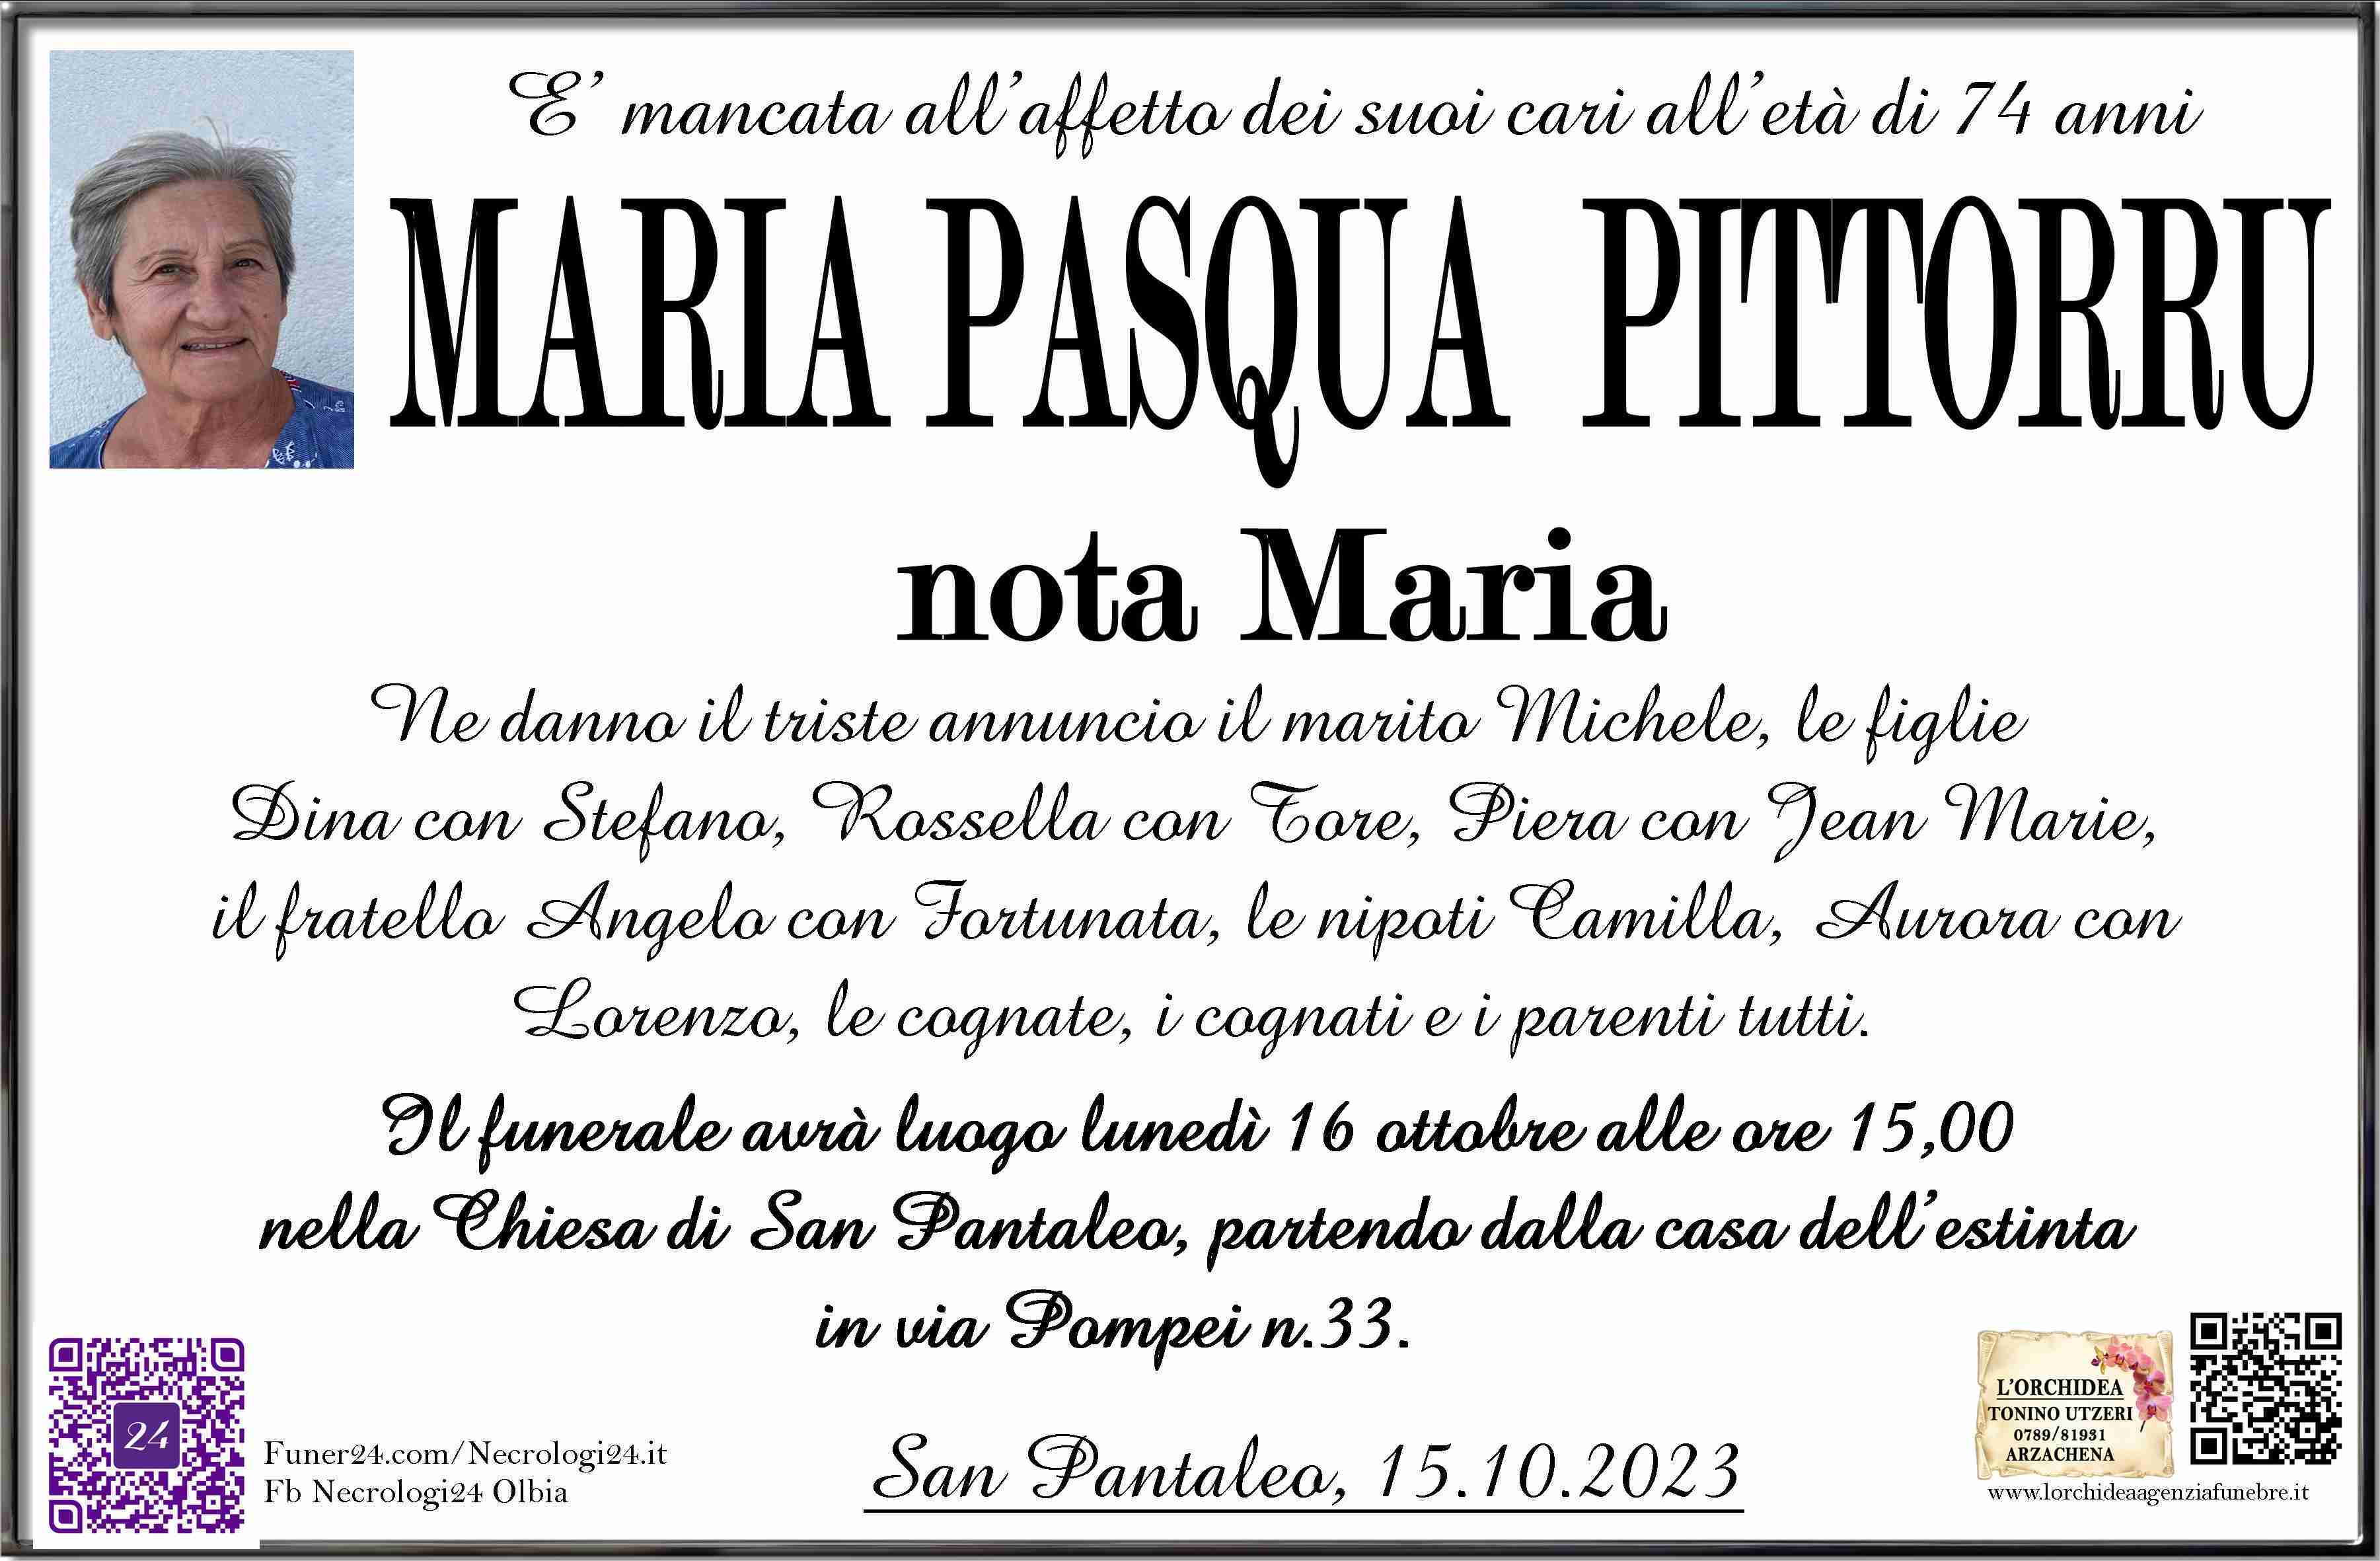 Maria Pasqua Pittorru